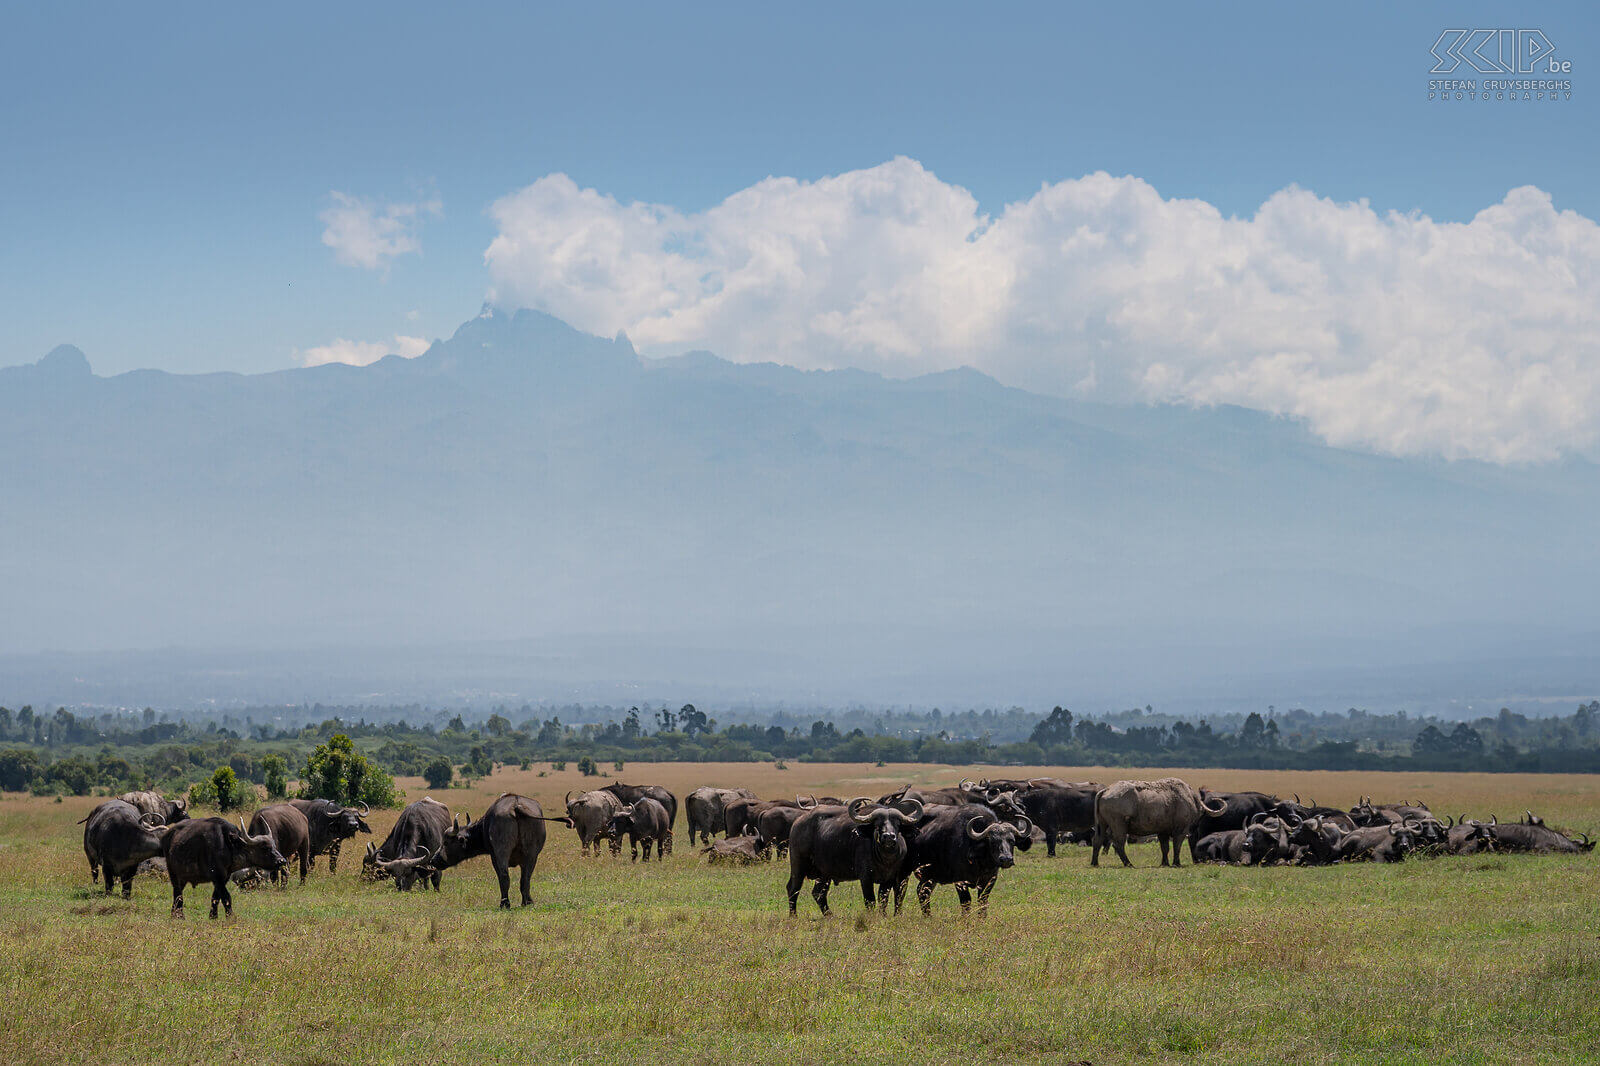 Ol Pejeta - Afrikaanse buffels Afrikaanse buffel is het grootste holhoornige hoefdier in Afrika. Ze kunnen tot 850 kg weg en ze leven in grote kuddes zowel op de savanne als in bossen. Het is bovendien ook één van de big-five-soorten. De buffel is een geliefkoosde prooi voor leeuwen. Wij konden grote groepen buffels spotten in Ol Pejeta waarbij de imposante Mount Kenya een adembenemende achtergrond vormde. Stefan Cruysberghs